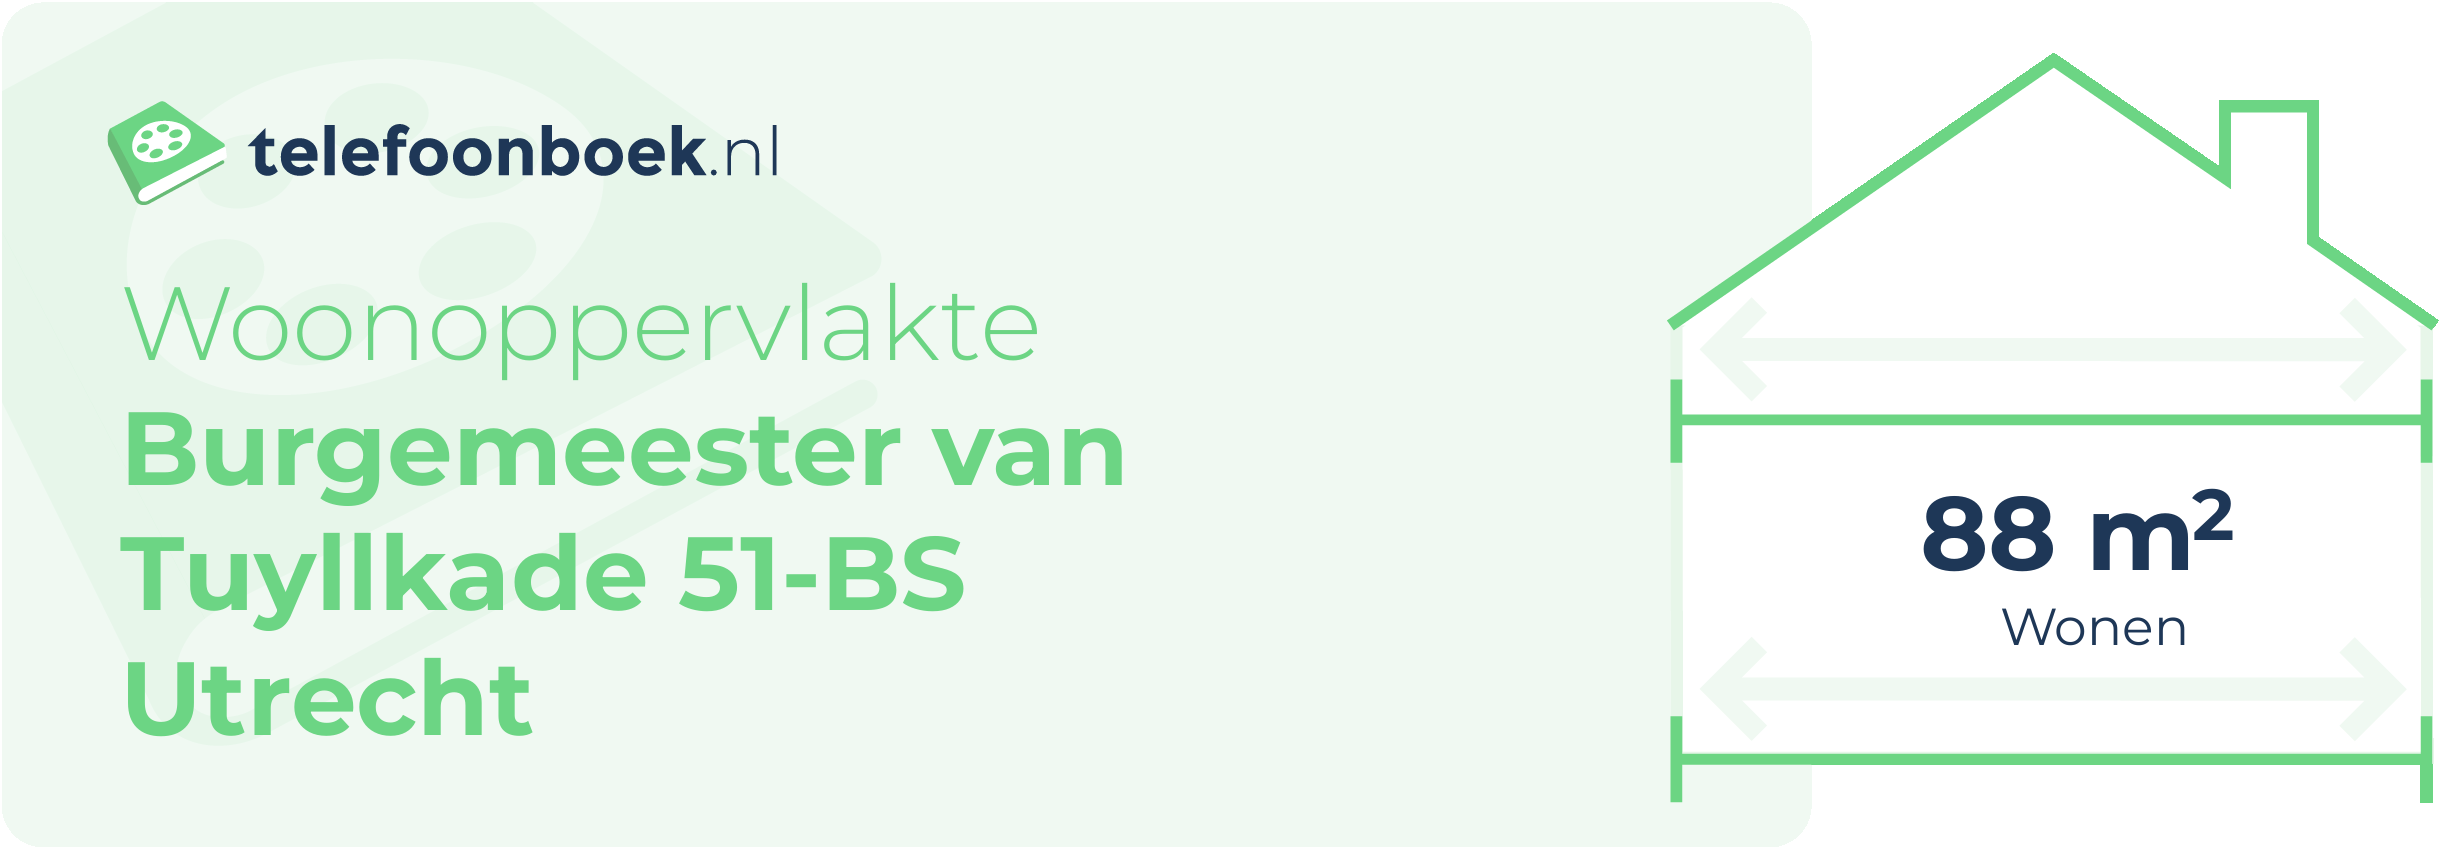 Woonoppervlakte Burgemeester Van Tuyllkade 51-BS Utrecht